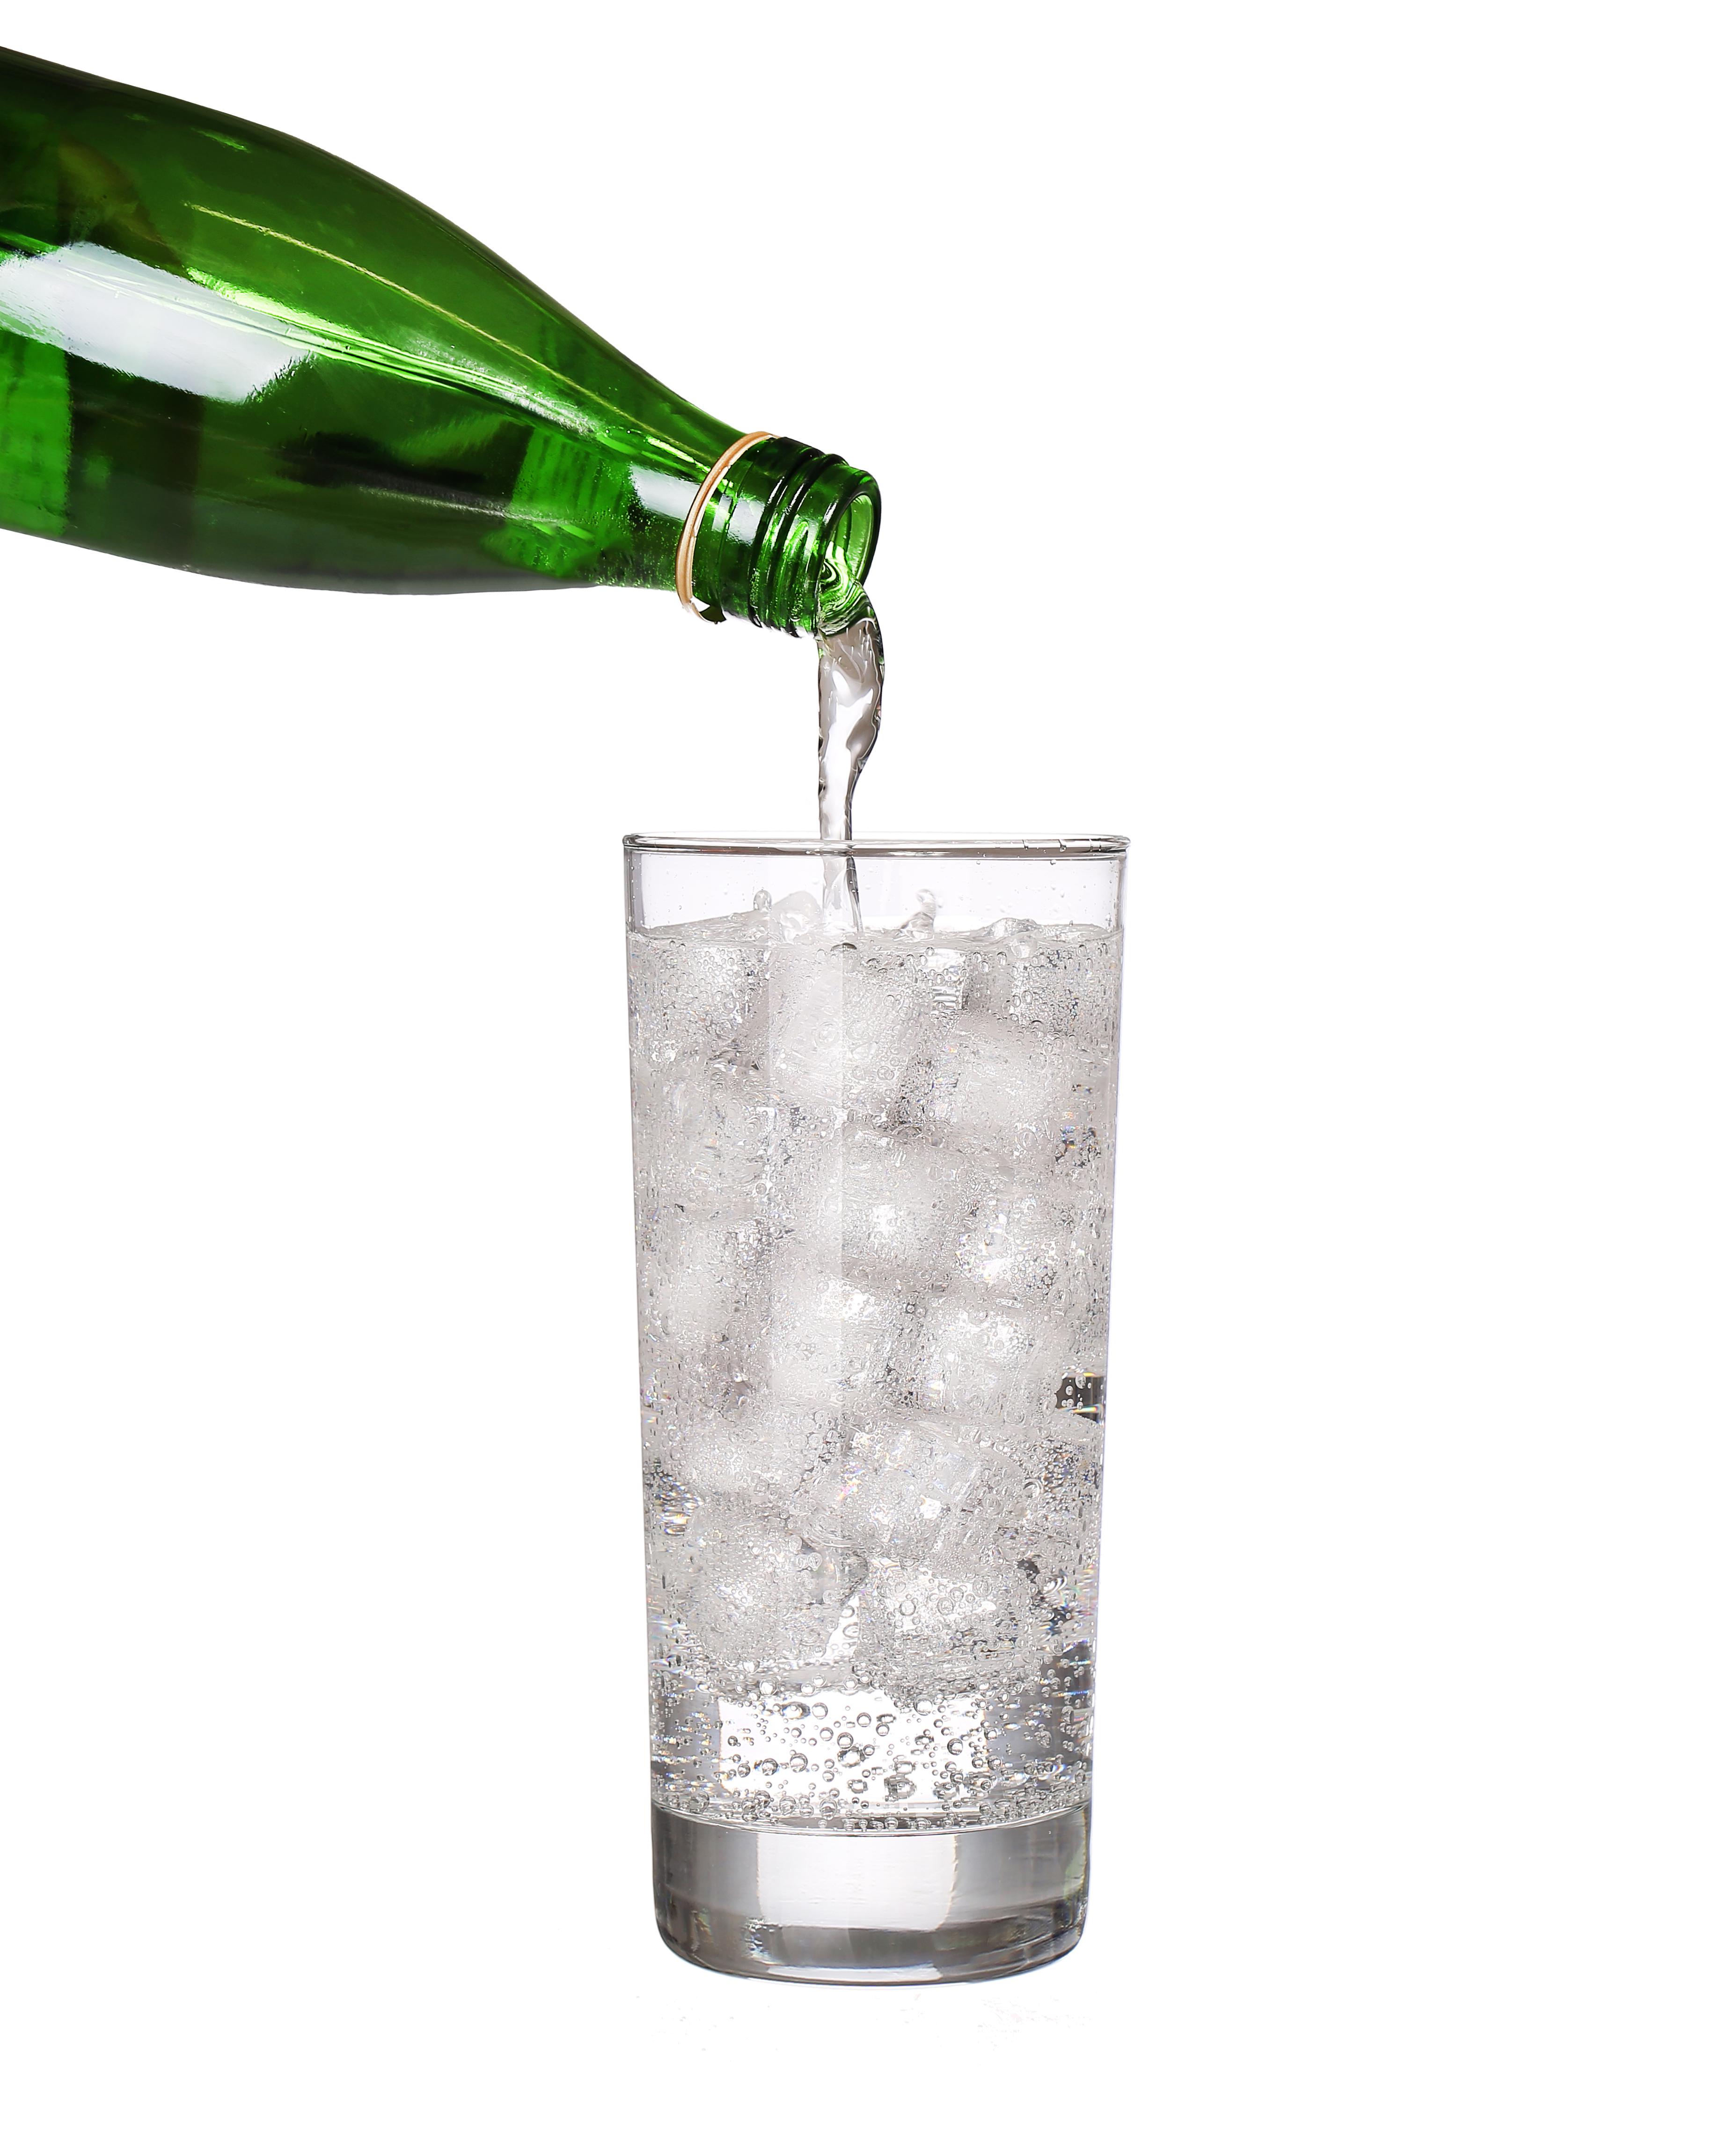 Холодная минеральная вода. Минералка газированная в стакане. Вода в зеленой стеклянной бутылке. Ледяная вода в стеклянной прозрачной бутылке. Вода позеленела в бутылке.